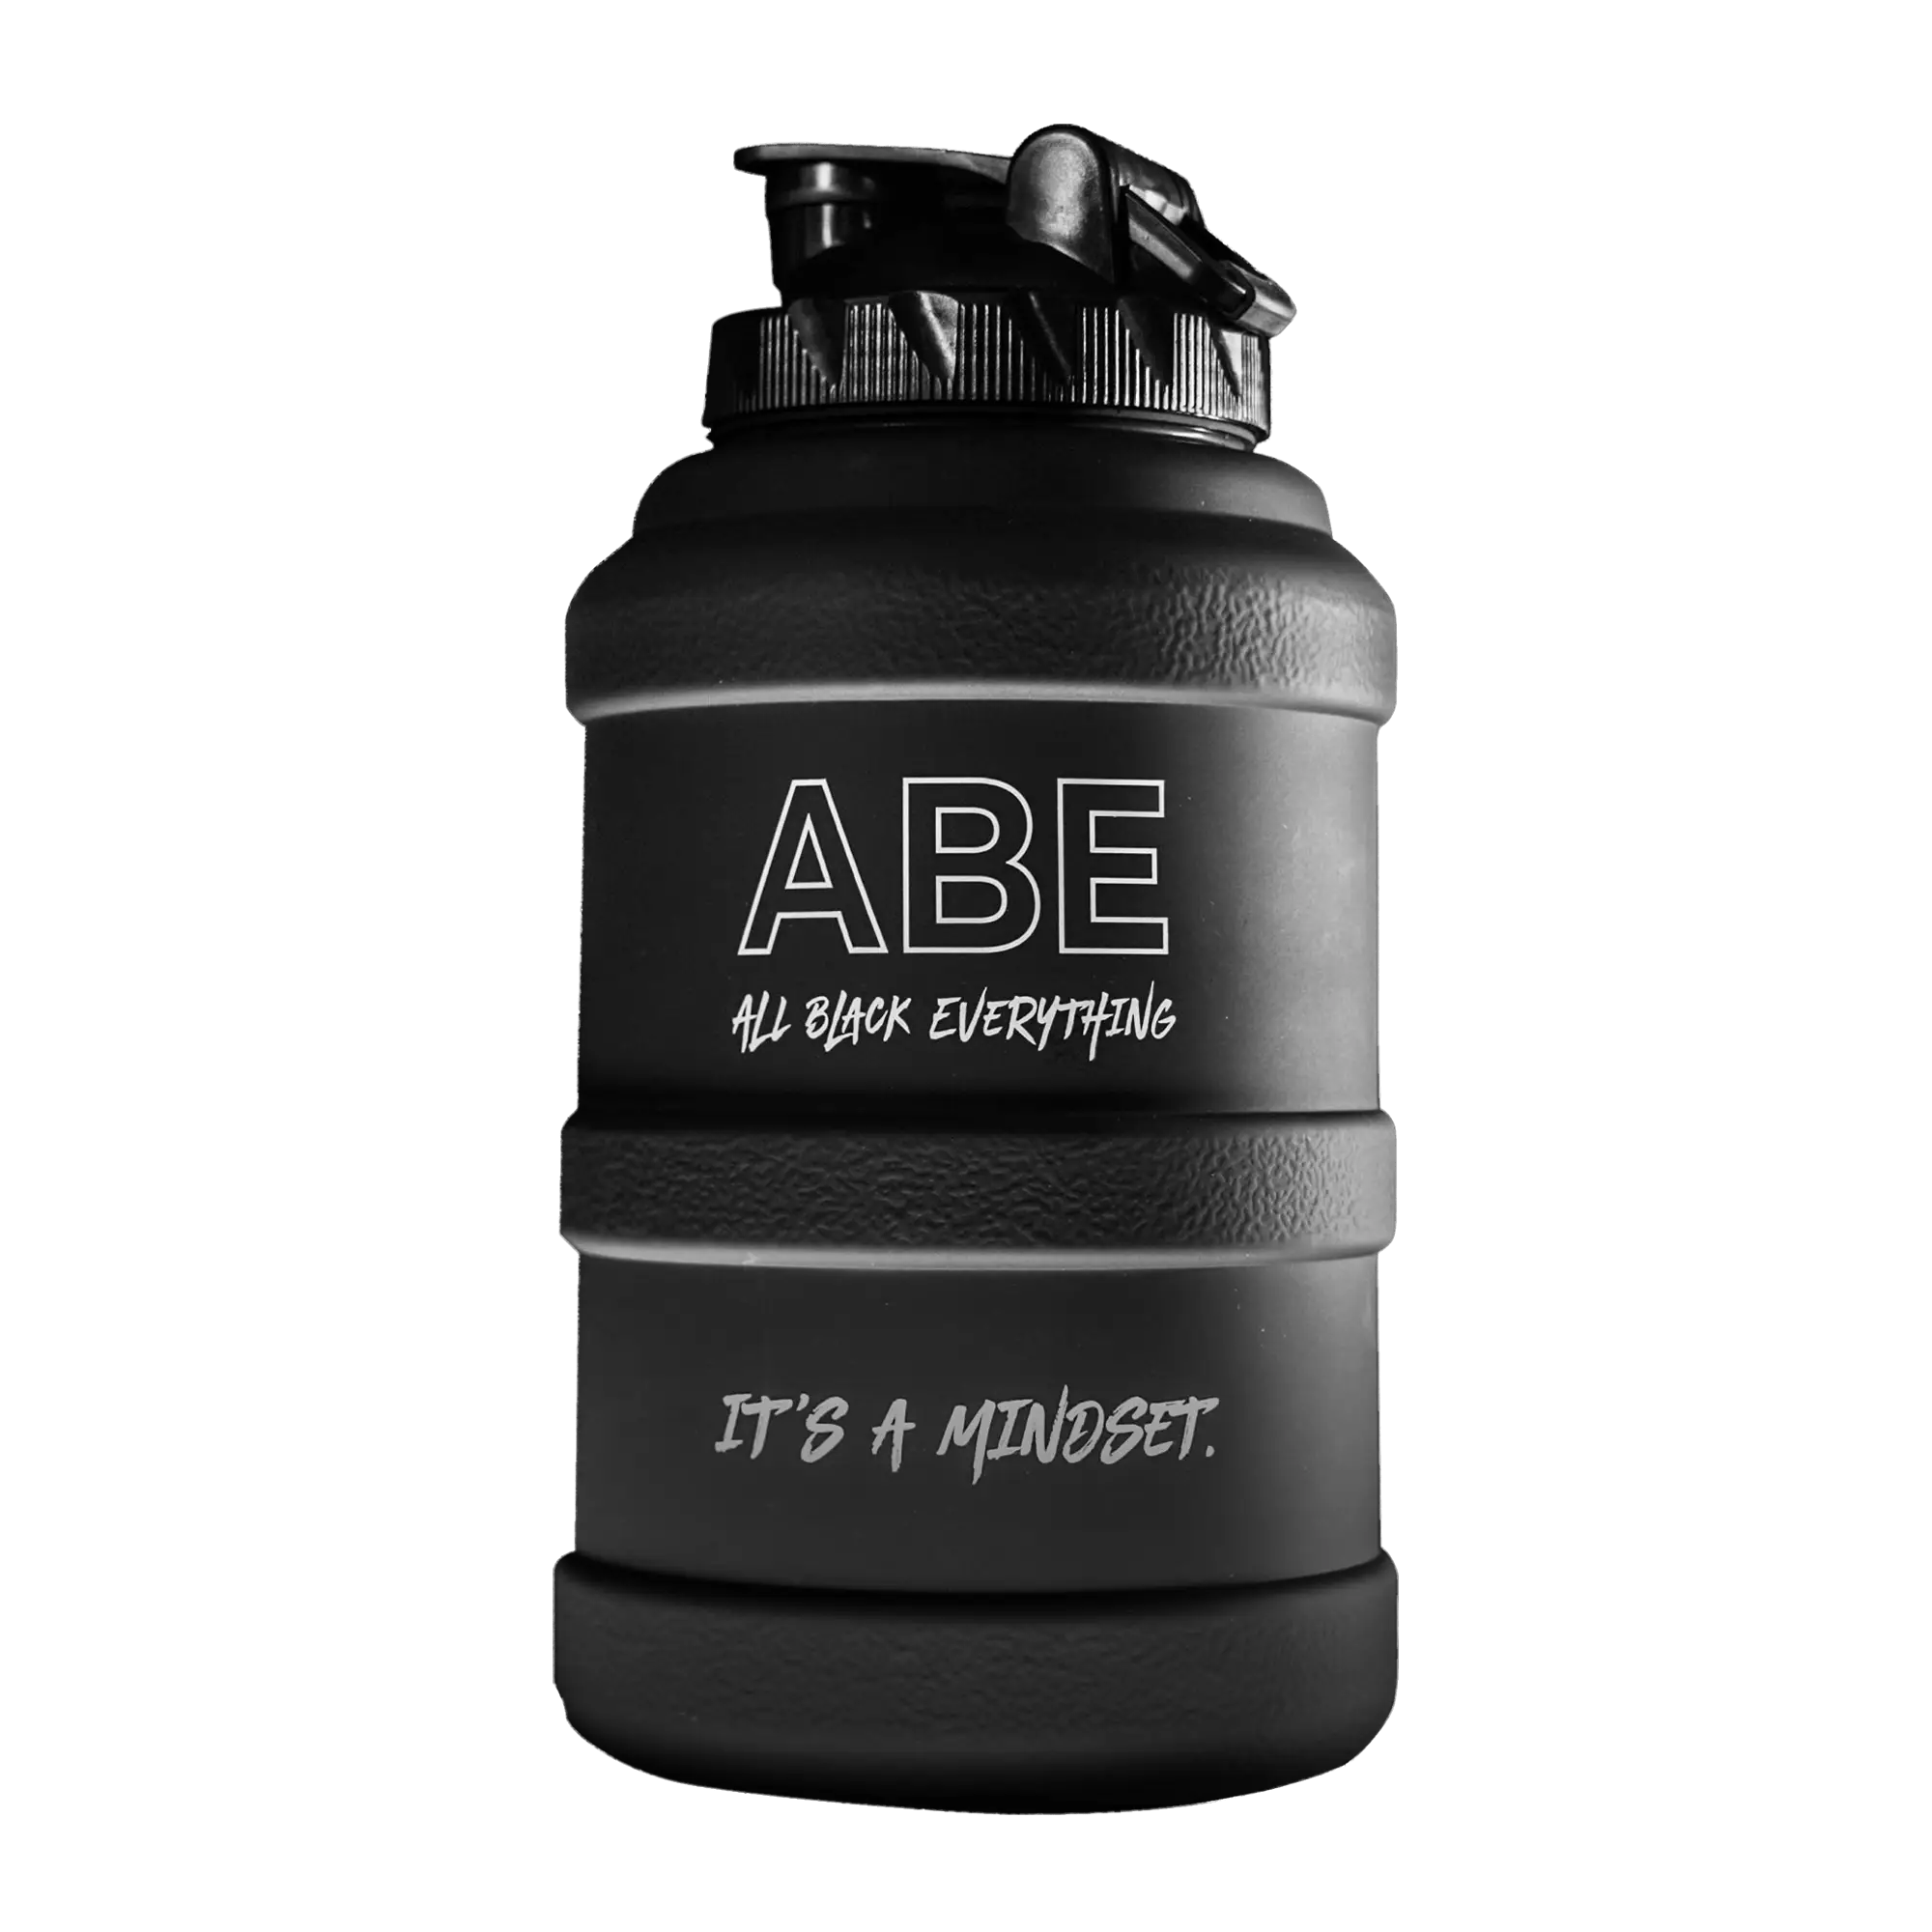 ABE 2.5 liter water jug